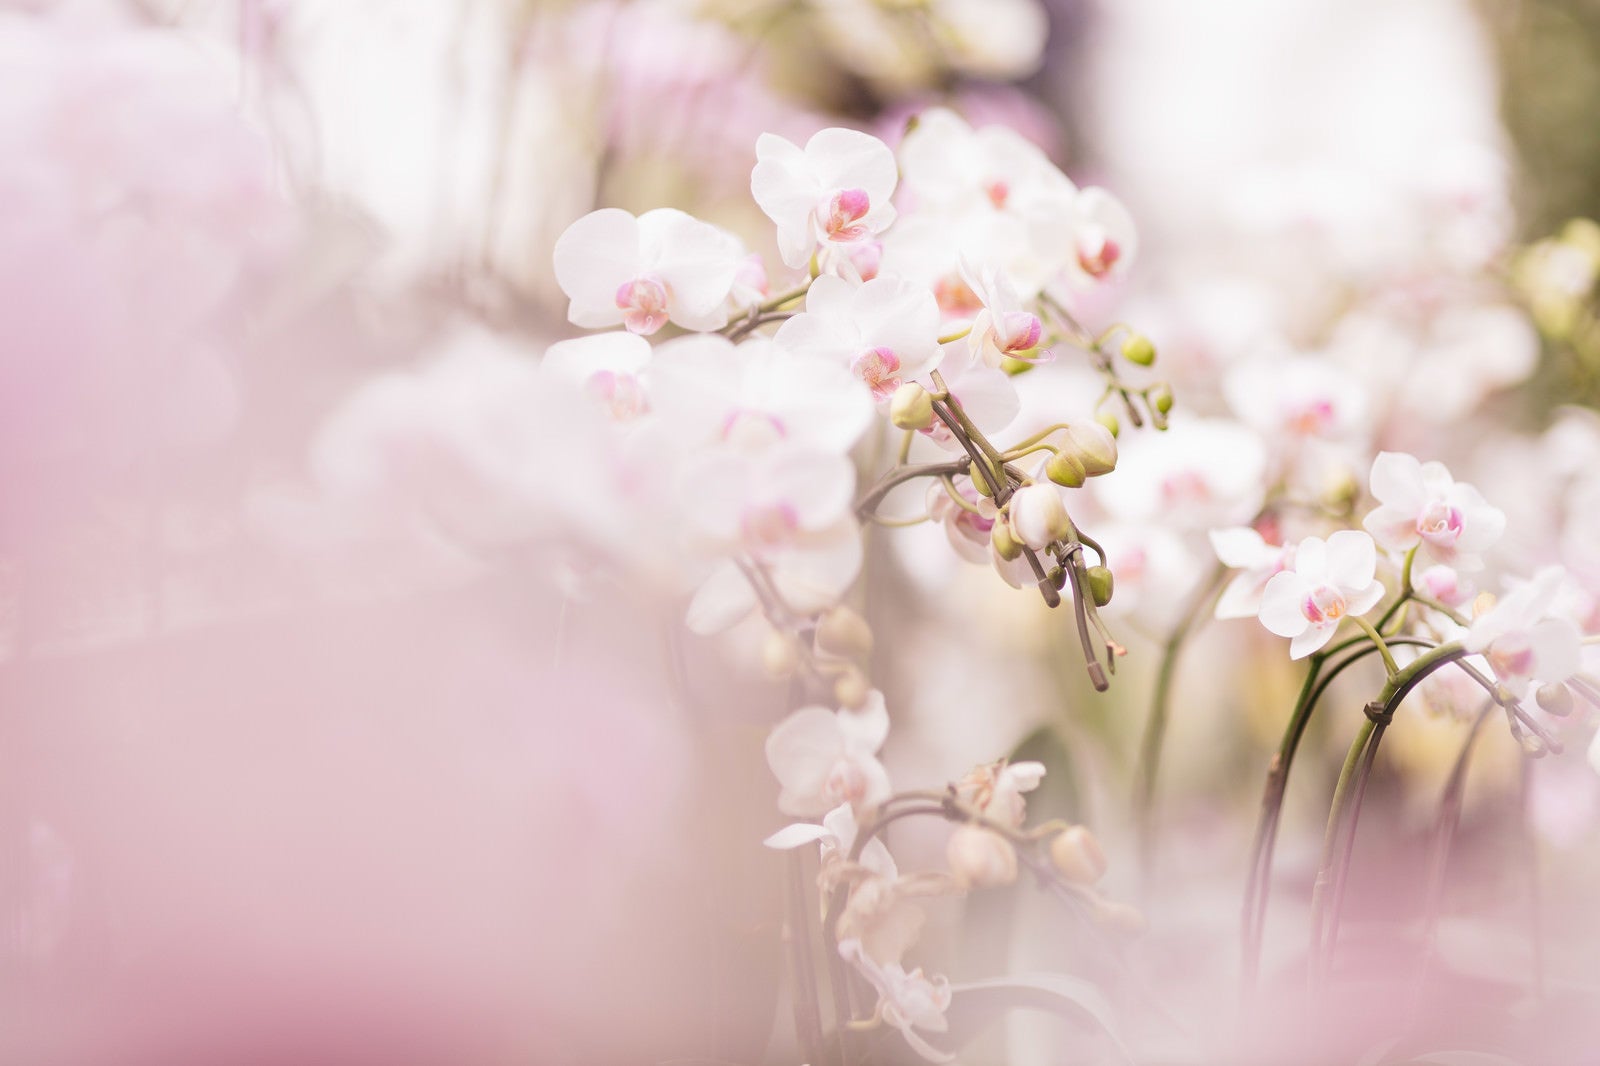 「小さい胡蝶蘭の花」の写真